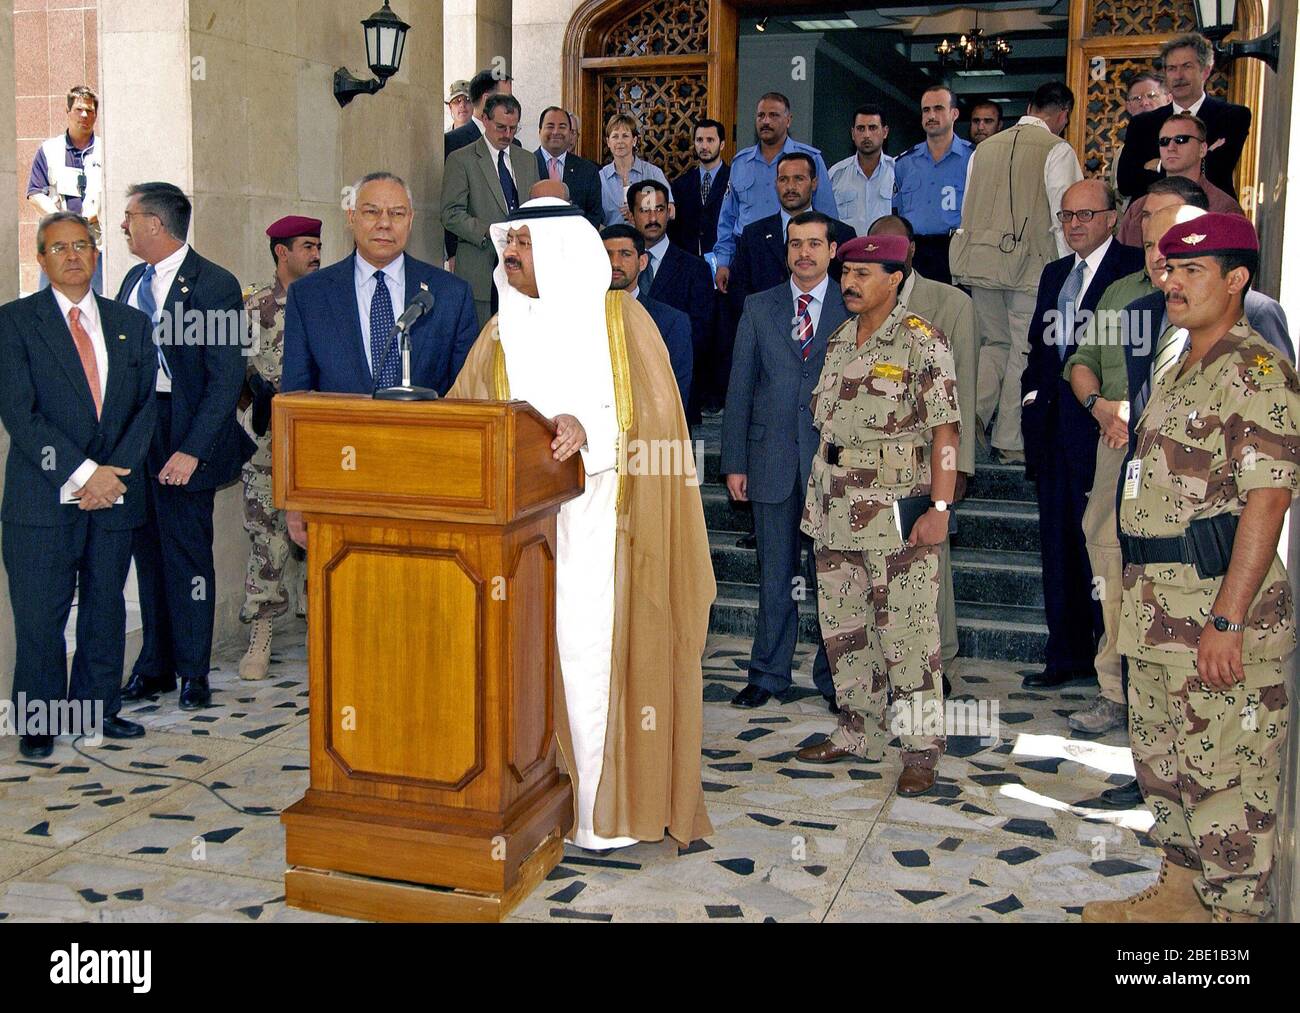 L' onorevole L. Colin Powell (sinistra), il Segretario di Stato americano e il presidente iracheno Sheik Ghazi al-Yawar (Ghazi Mashal Ajil al-Yawar), Presidente ad interim dell'Iraq, sia in piedi dietro il leggio, indirizzo media in una conferenza stampa ufficiale a Bagdad, Provincia di Baghdad, Iraq (IRQ), durante l'Operazione Iraqi Freedom. Foto Stock